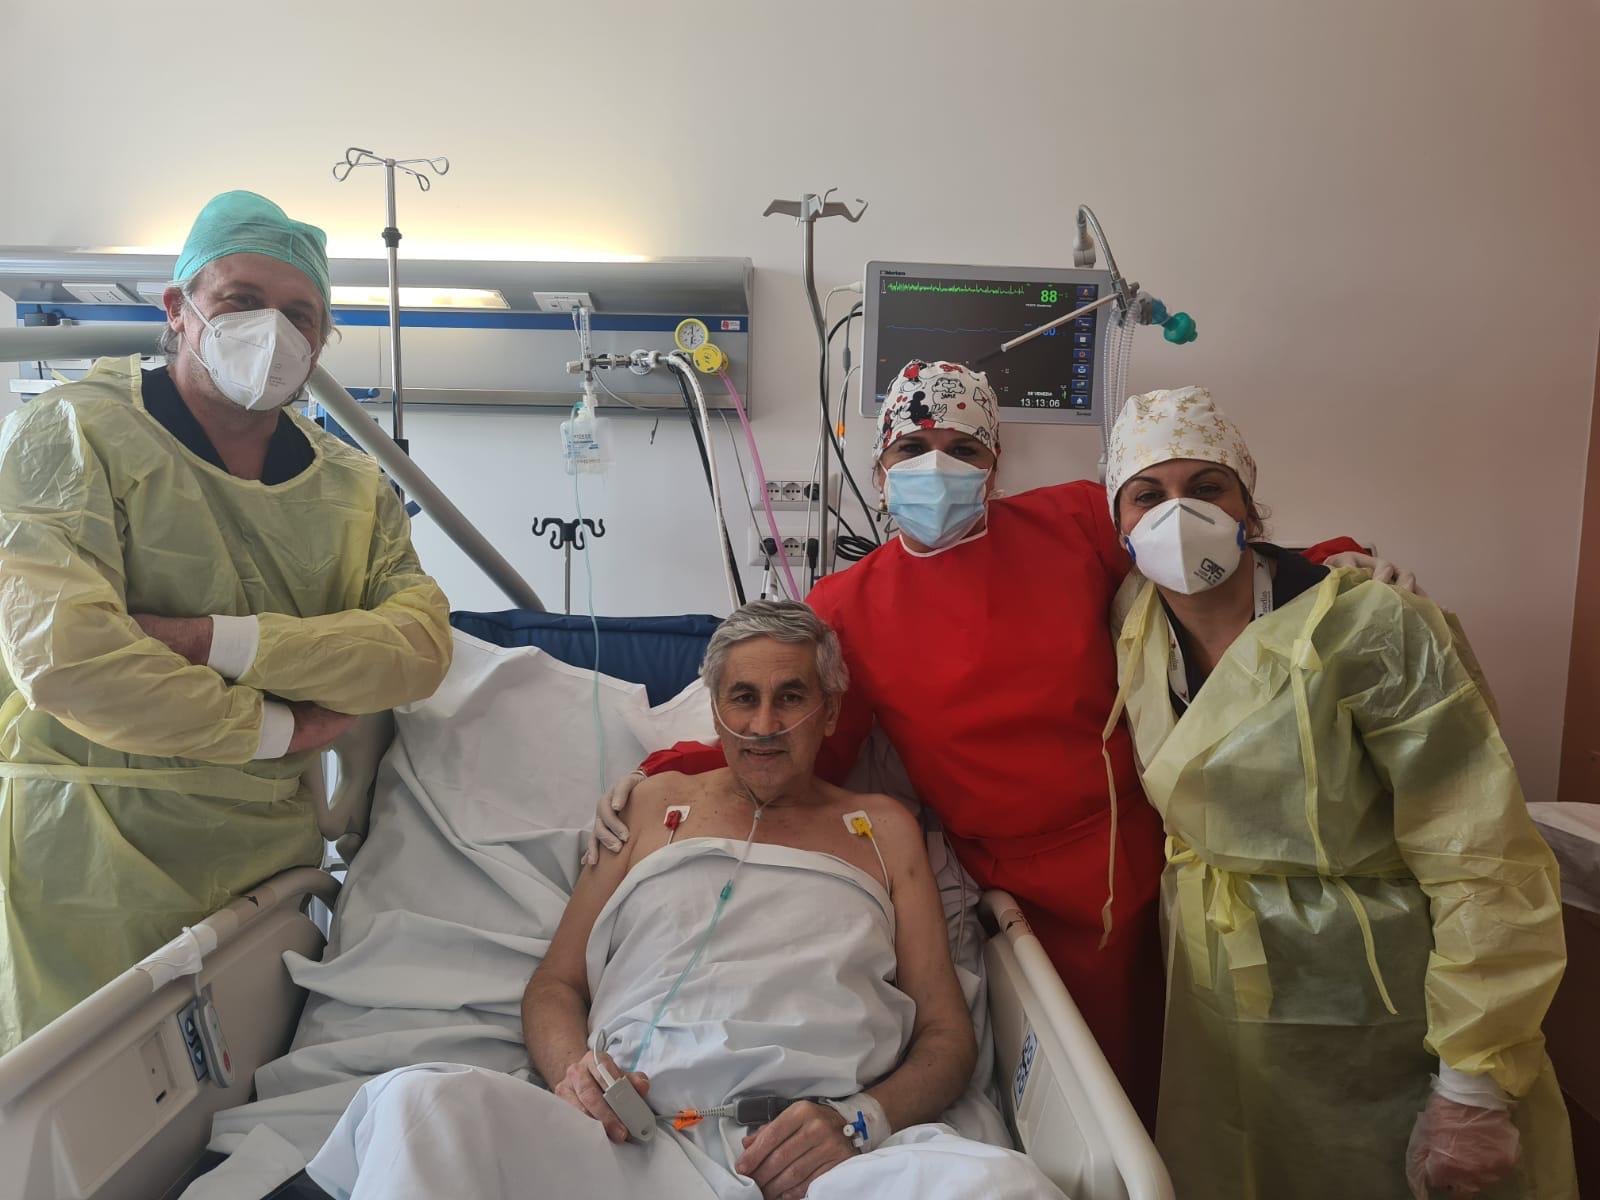 Covid Hospital, solo 15 ricoverati: dimessi altri 4 pazienti. Storti: il loro sorriso emozione indescrivibile